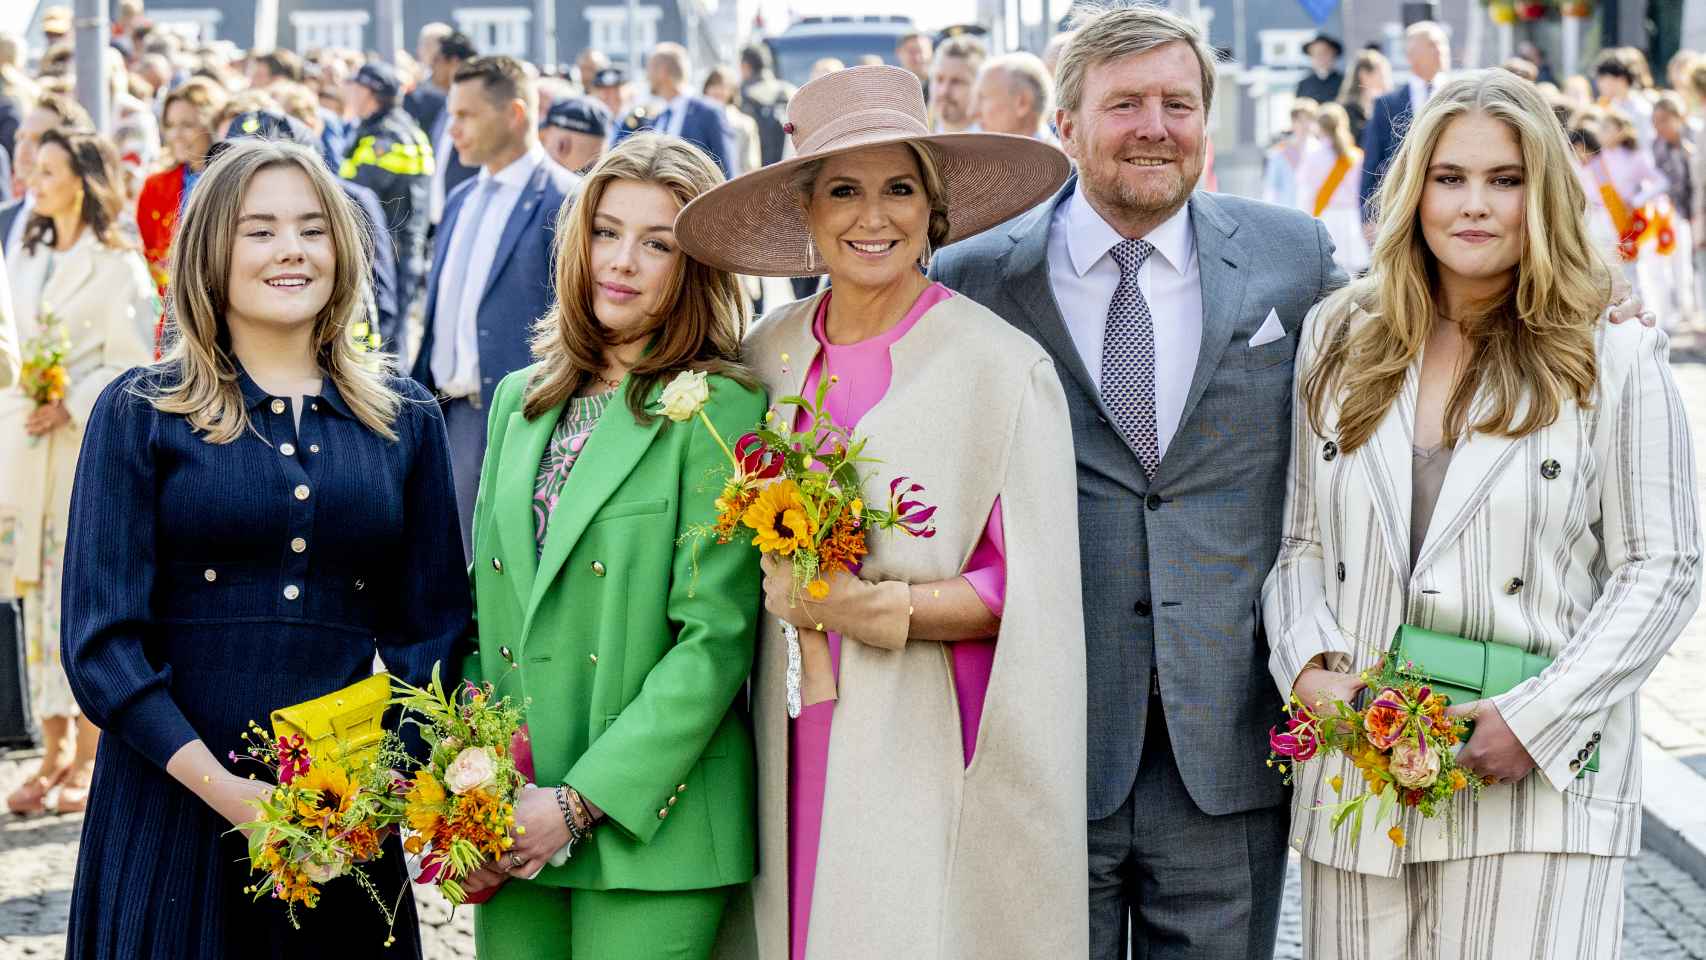 Los Reyes de Holanda, Guillermo y Máxima, con sus tres hijas, Ariane, Alexia y Amalia, el pasado 27 de abril.